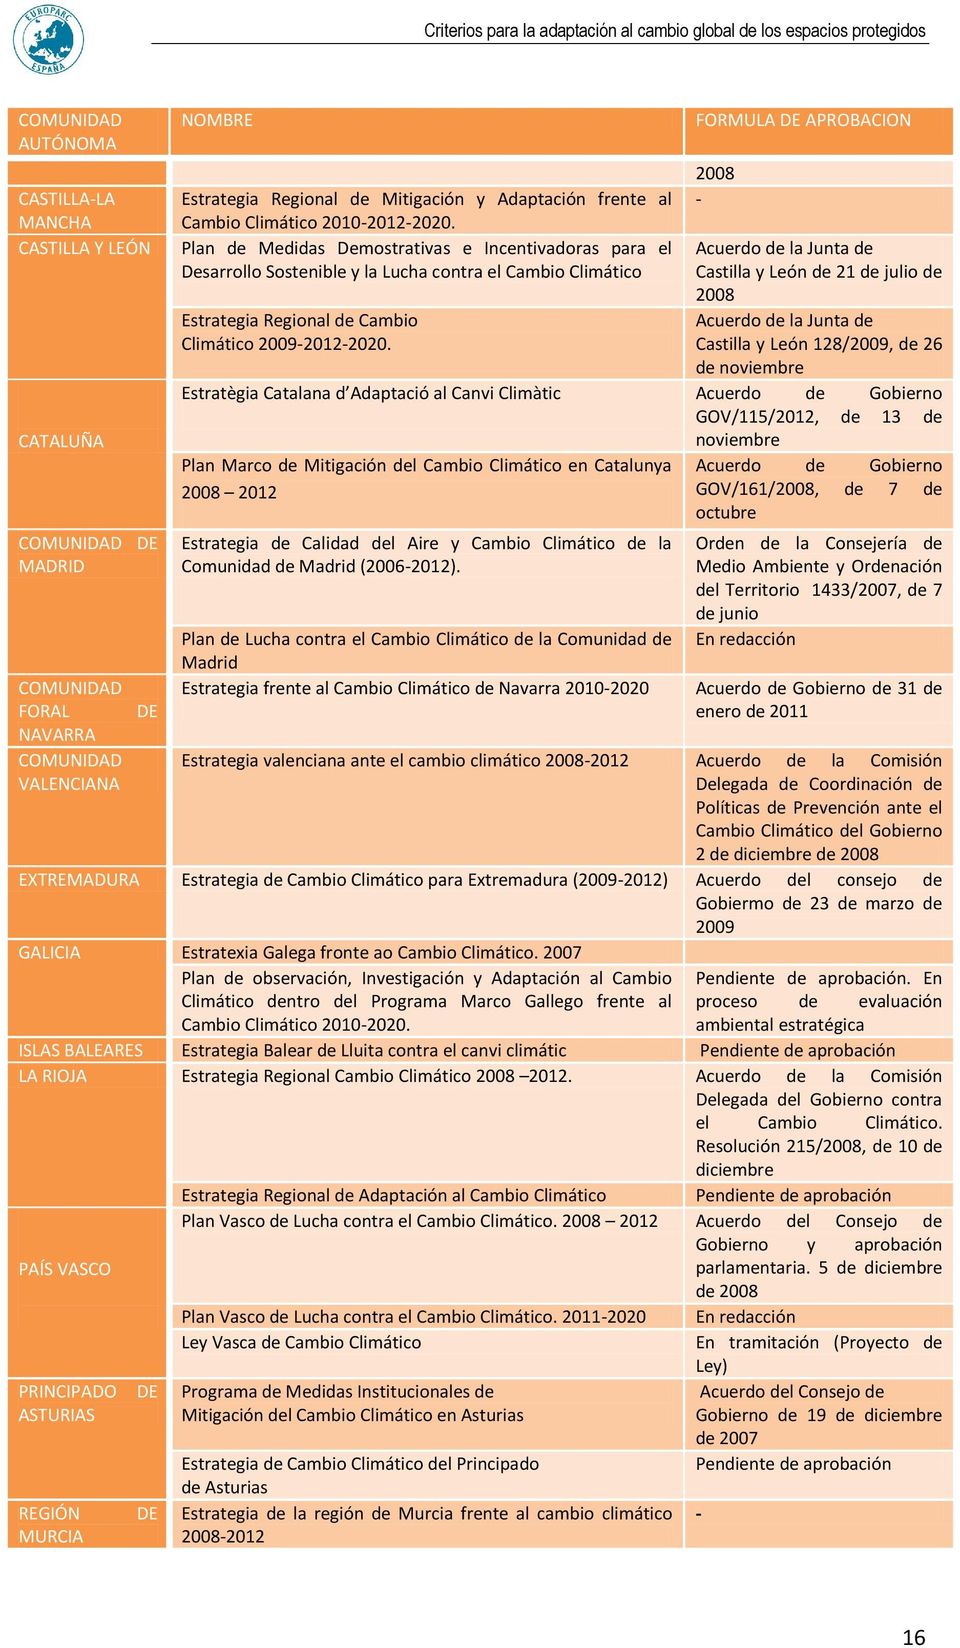 Plan de Medidas Demostrativas e Incentivadoras para el Desarrollo Sostenible y la Lucha contra el Cambio Climático Estrategia Regional de Cambio Climático 2009-2012-2020.